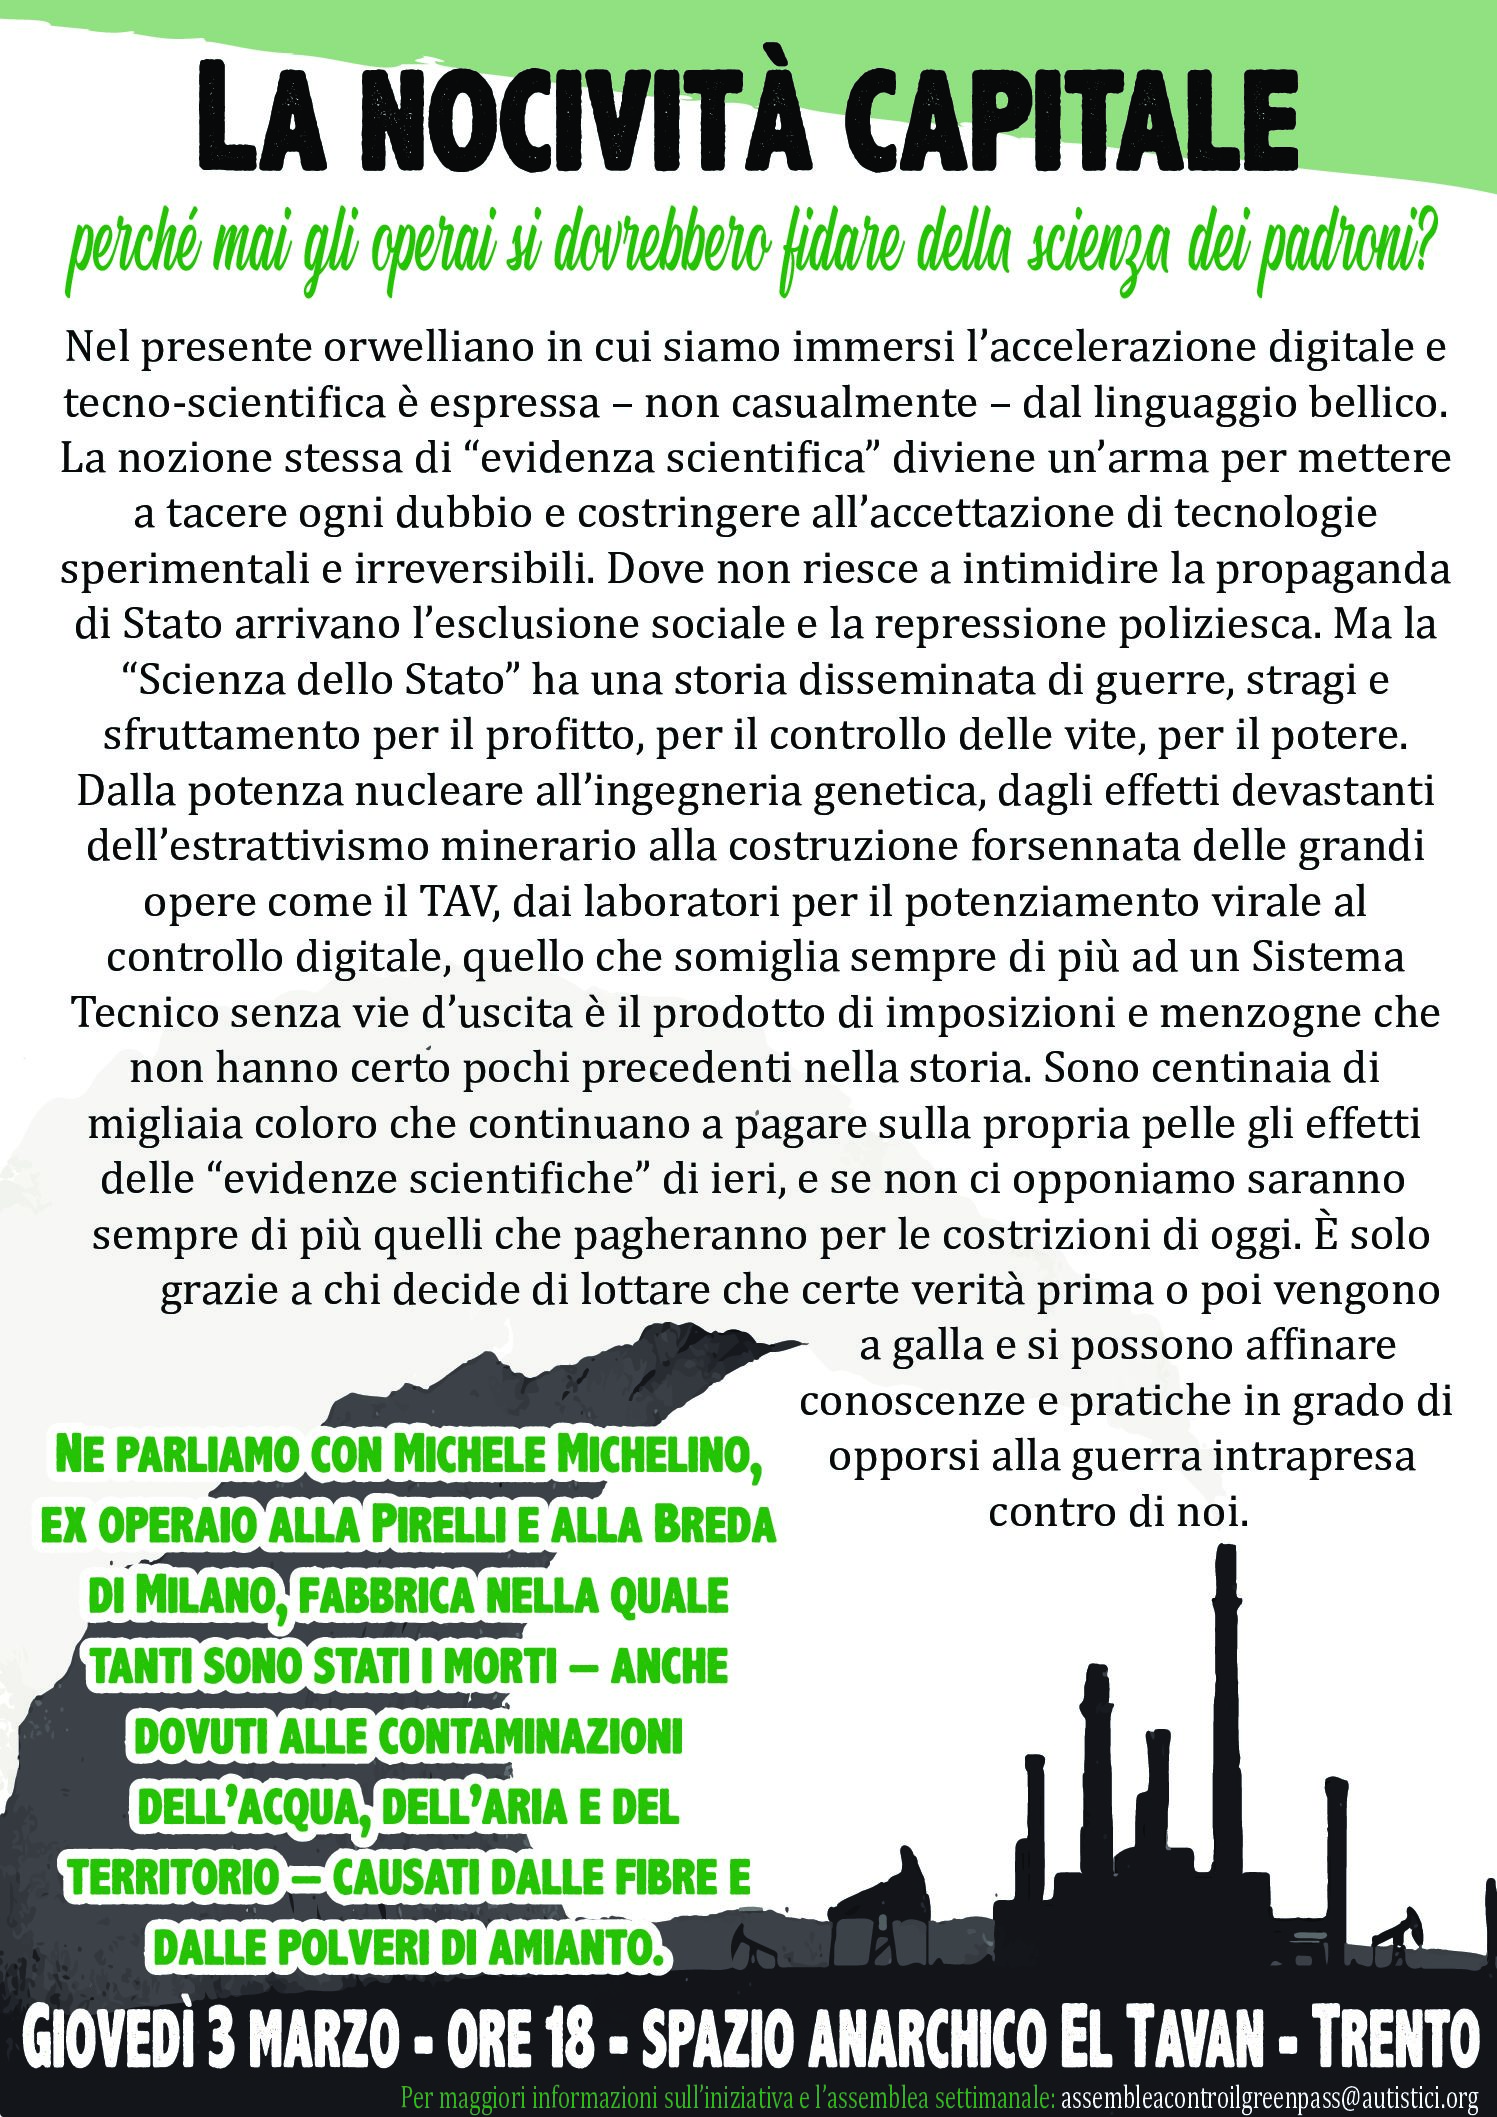 Trento, 3 marzo: La nocività capitale – Incontro con Michele Michelino